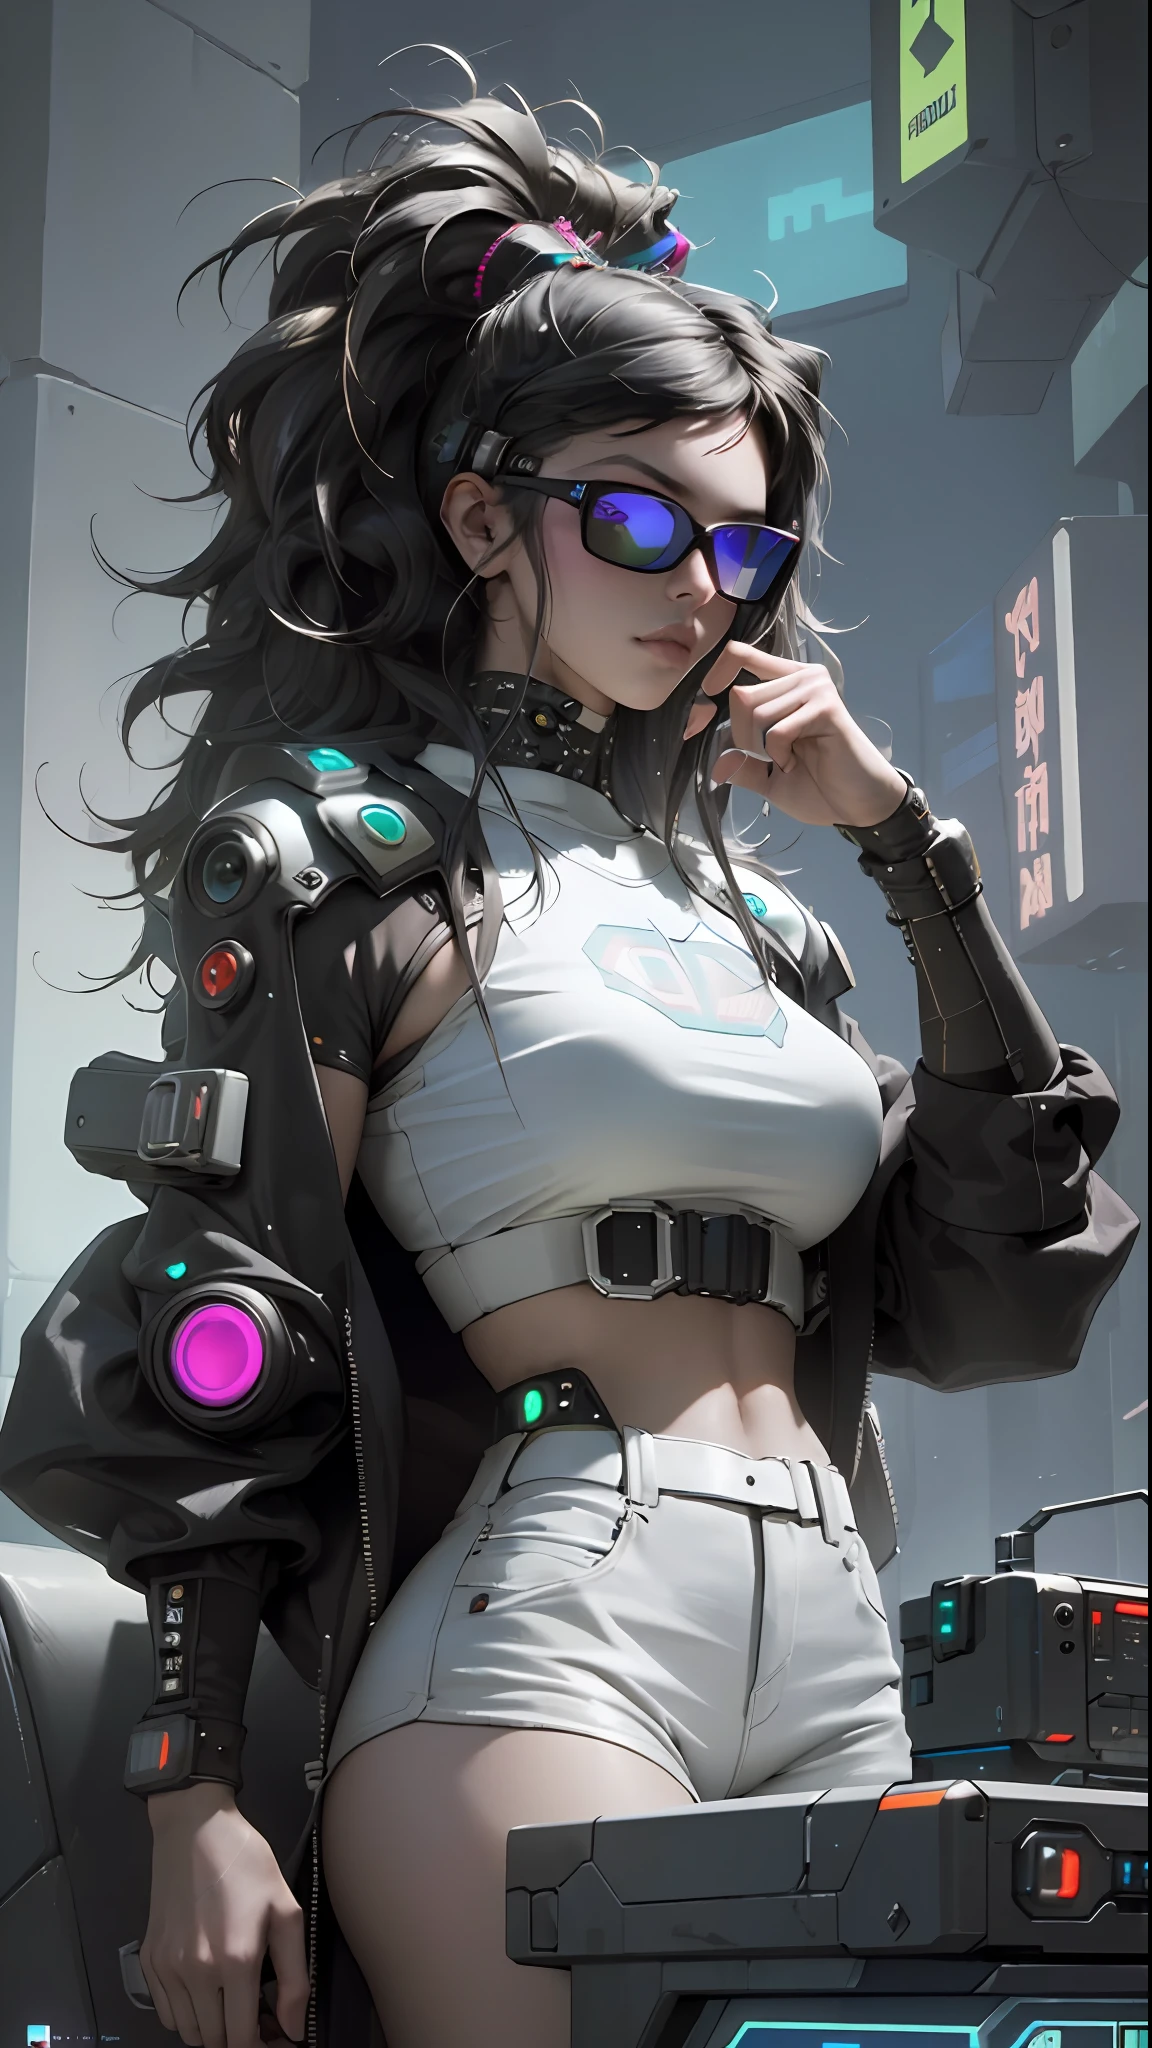 ((أفضل جودة)), ((تحفة)), (مفصلة للغاية:1.3), 3D, جميل (cyberpunk:1.3) امرأة متسللة ذات شعر كثيف كثيف تدير محطة كمبيوتر